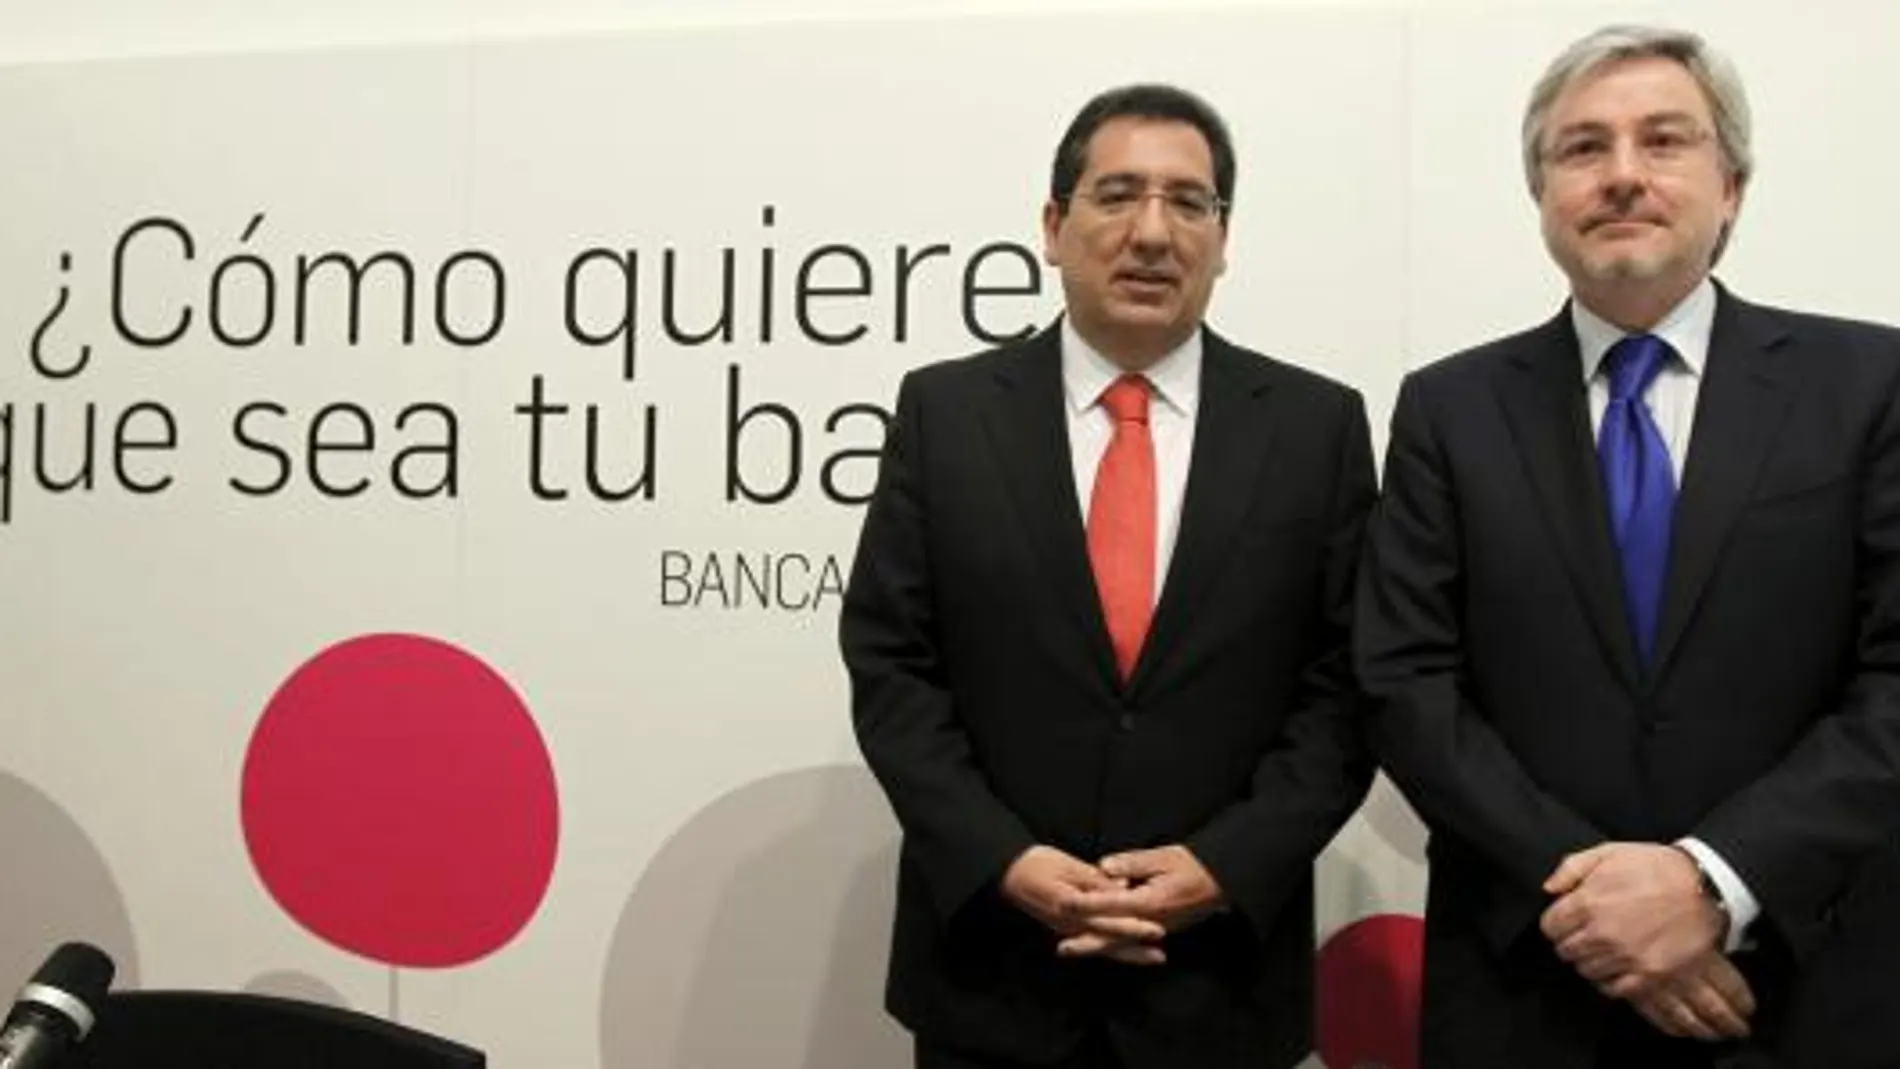 Los copresidentes de Banca Cívica, Antonio Pulido y Enrique Goñi, presentaron ayer su nueva estrategia para captar clientes